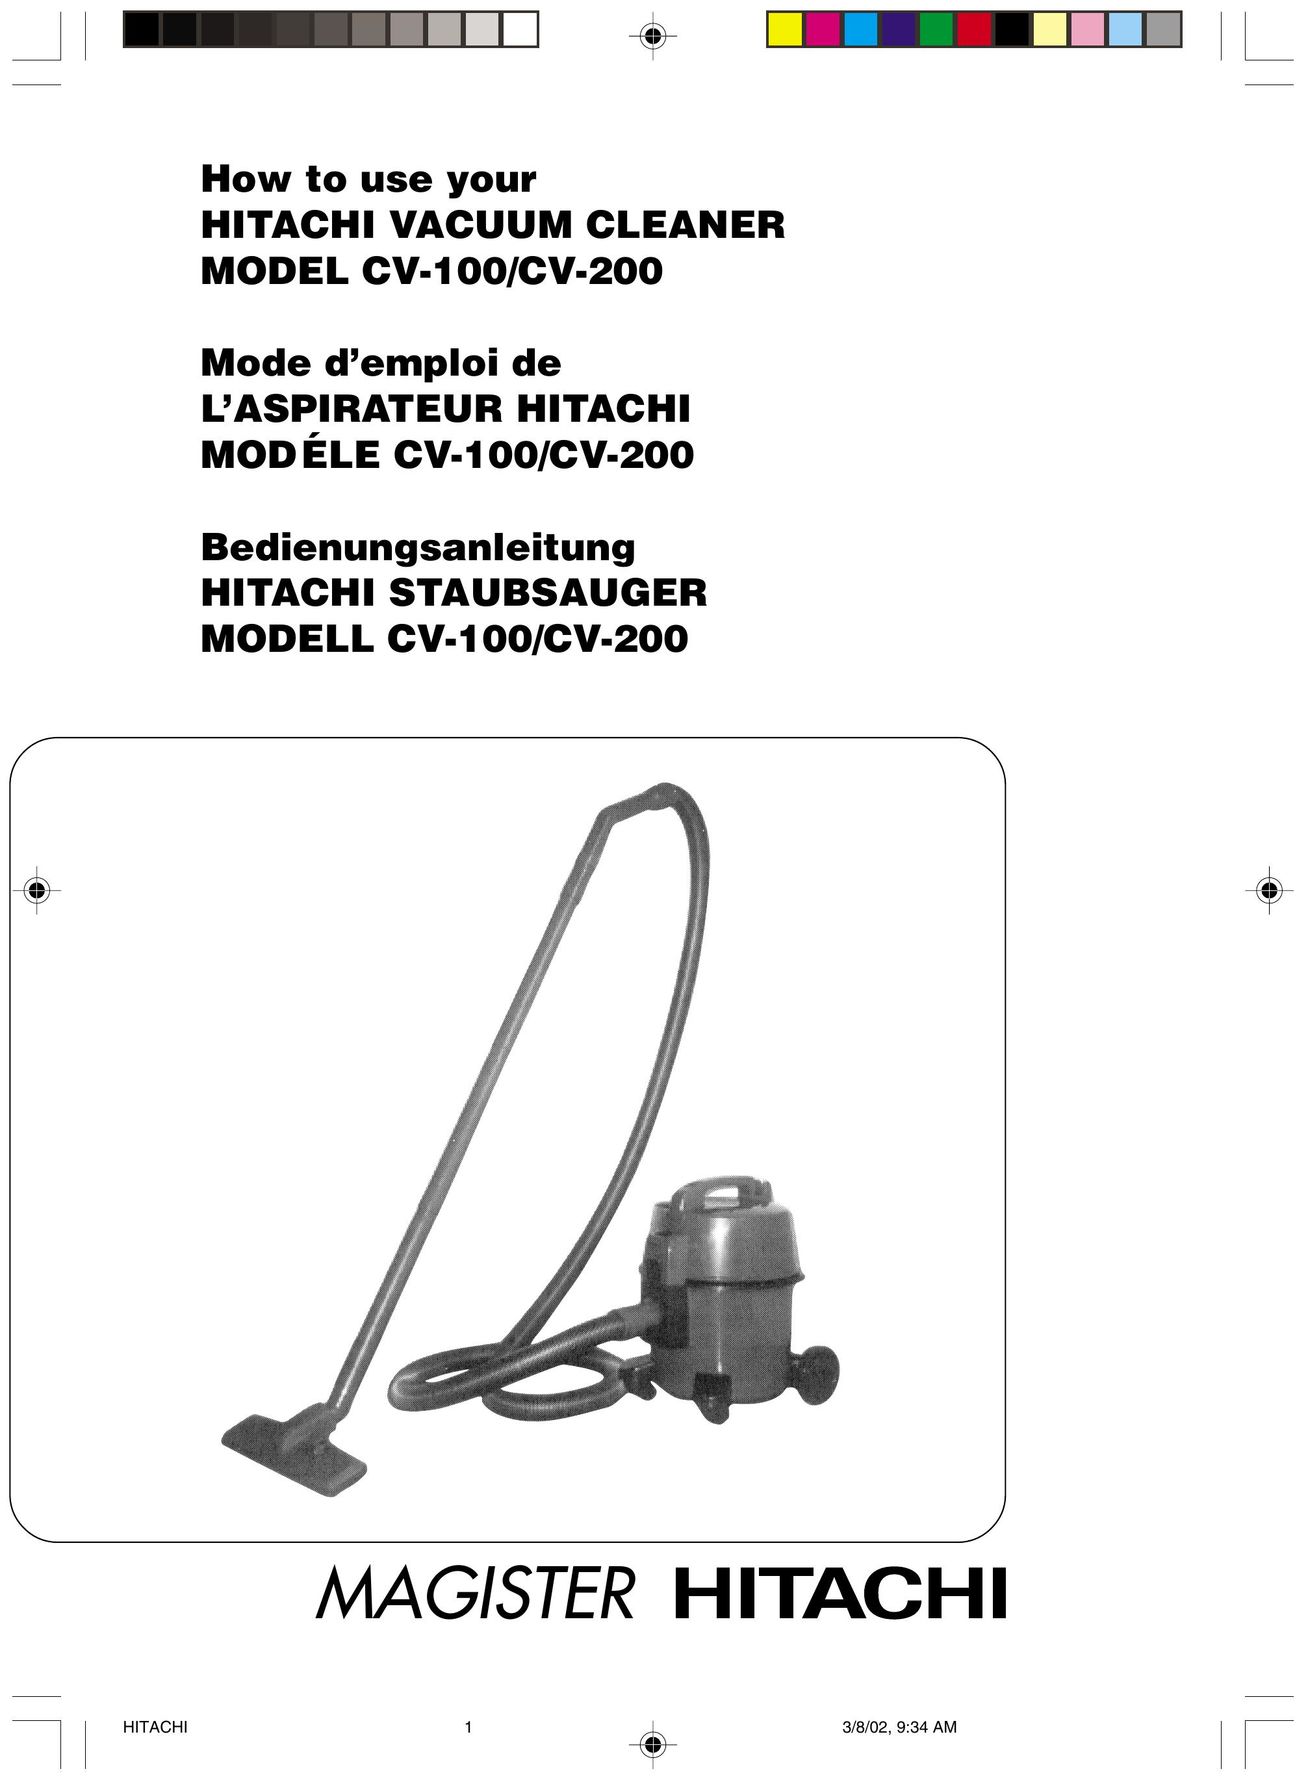 Hitachi CV-100 Vacuum Cleaner User Manual